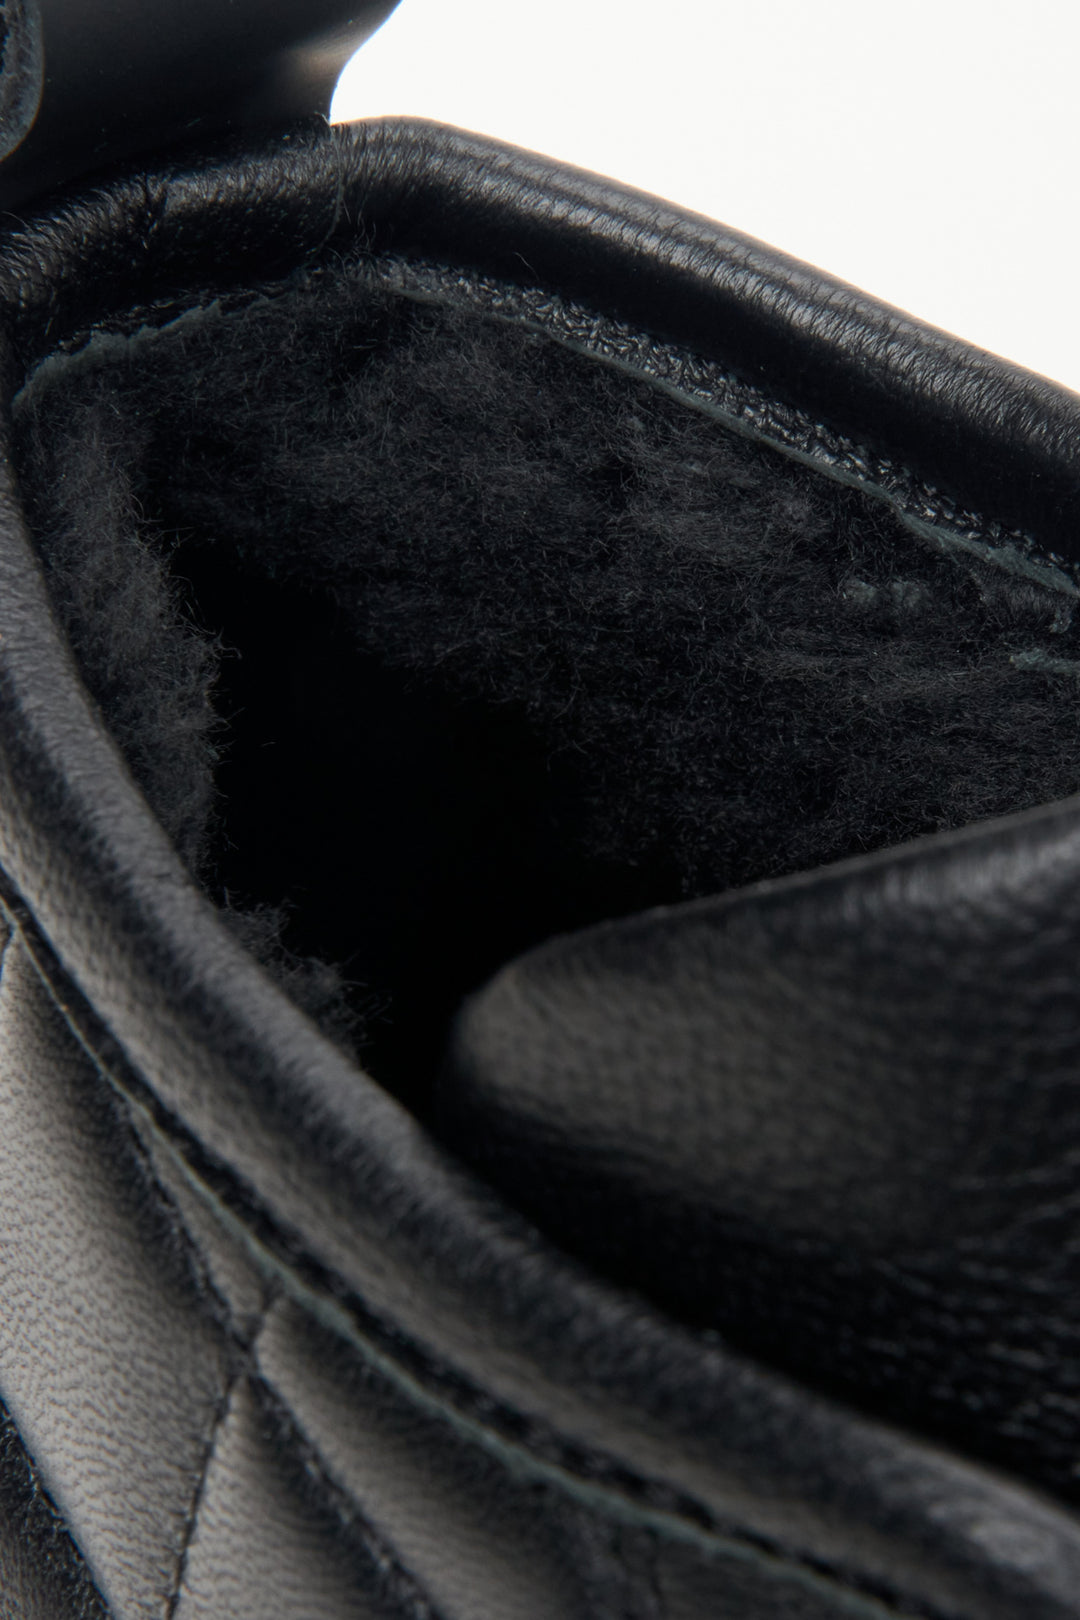 Skórzane, męskie botki w kolorze czarnym z ociepleniem marki Estro - zbliżenie na ciepły wsad.